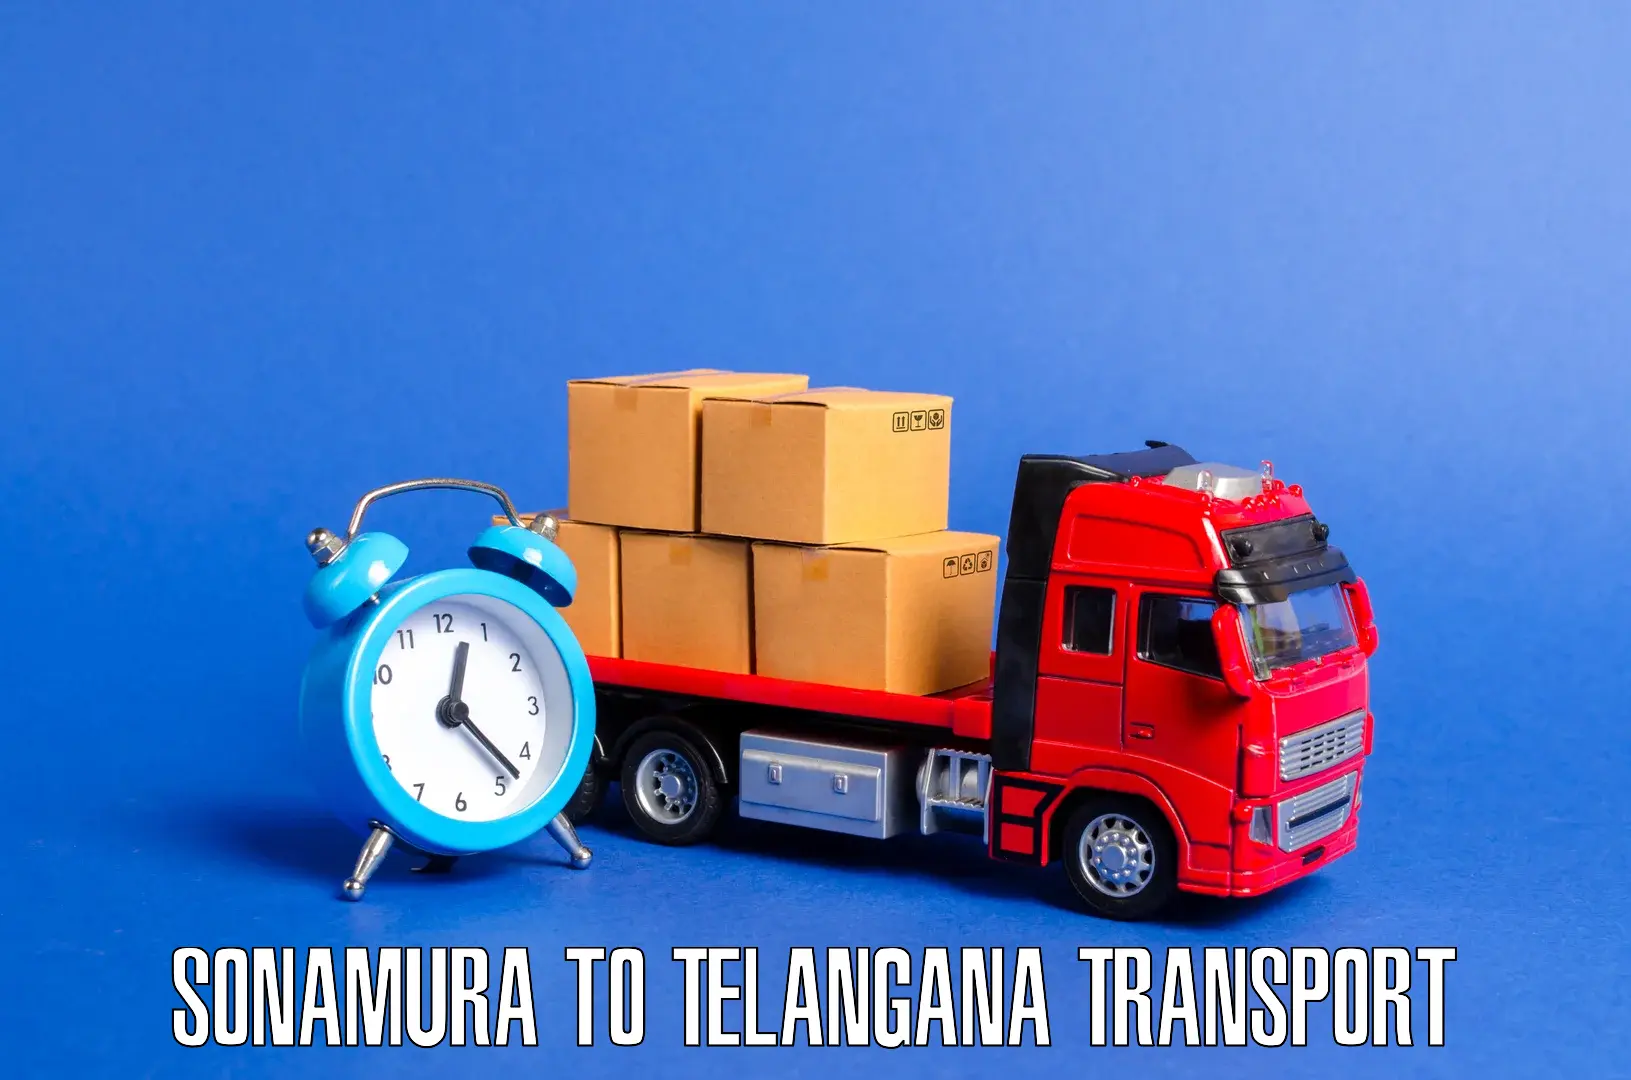 Delivery service in Sonamura to Tallada